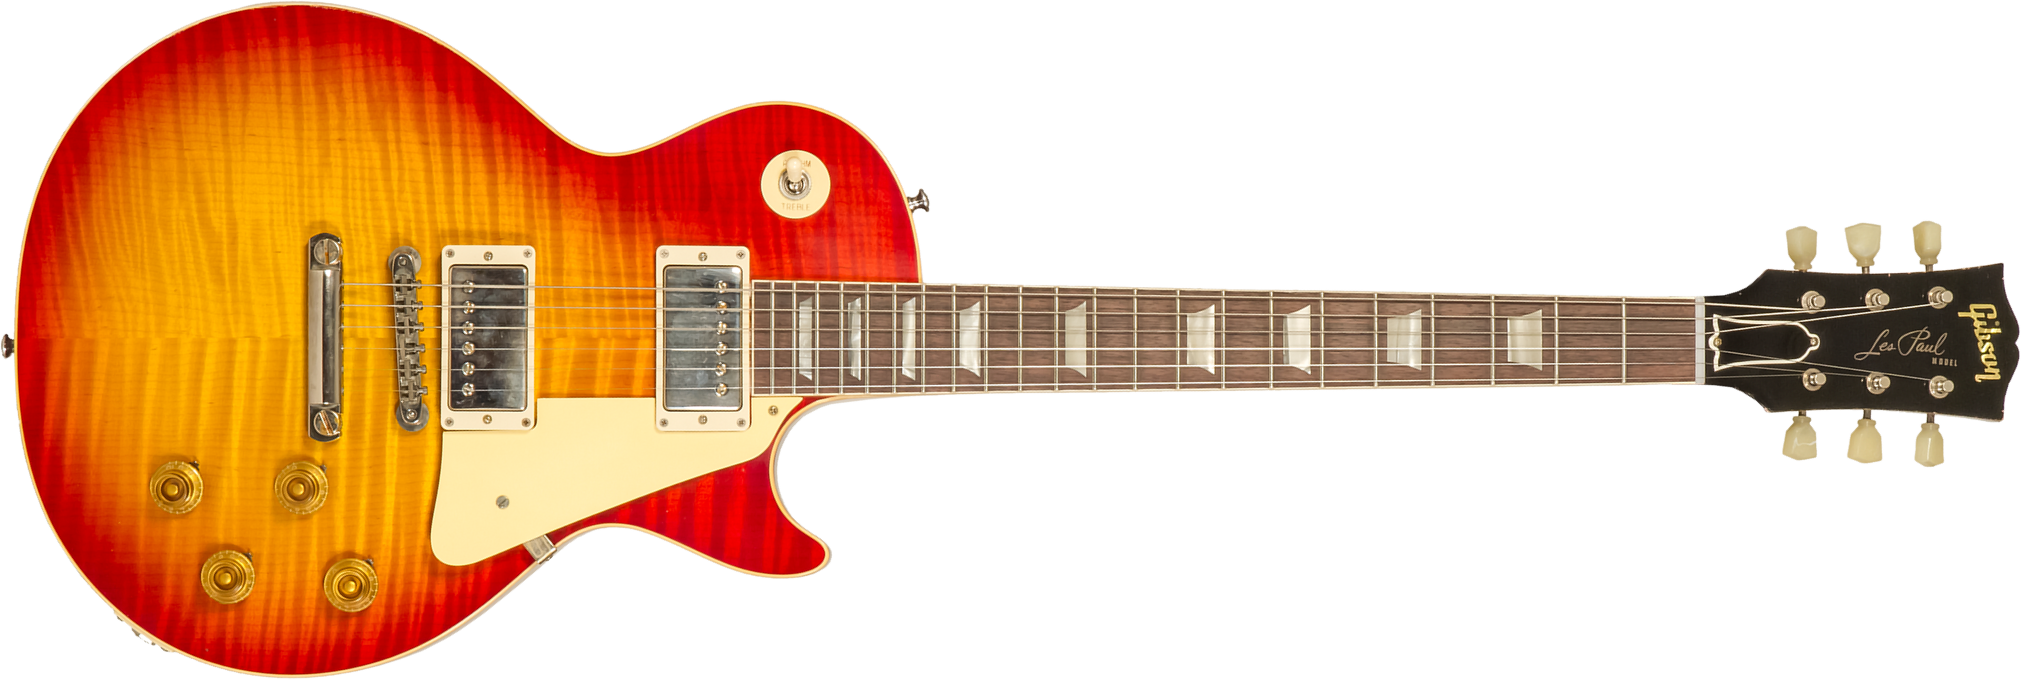 Gibson Custom Shop M2m Les Paul Standard 1959 Reissue 2h Ht Rw #94389 - Murphy Lab Light Aged Washed Cherry Sunburst - Guitare Électrique Single Cut -